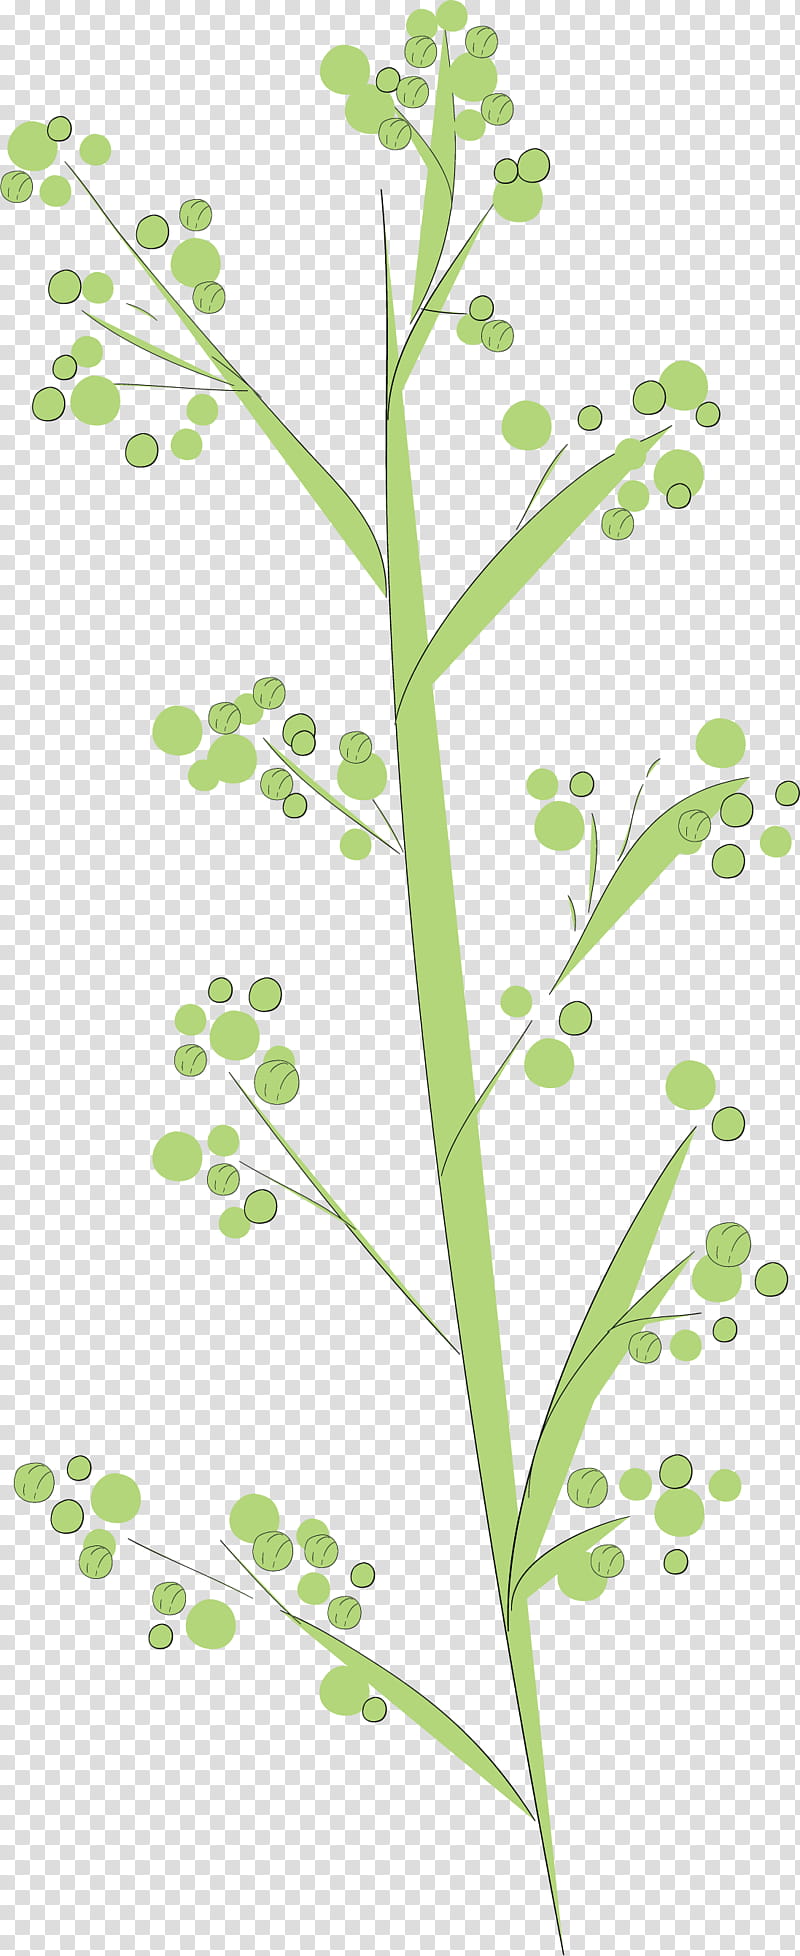 simple leaf simple leaf drawing simple leaf outline, Twig, Plant Stem, Grasses, Flower, Herb, Meter, Plants transparent background PNG clipart